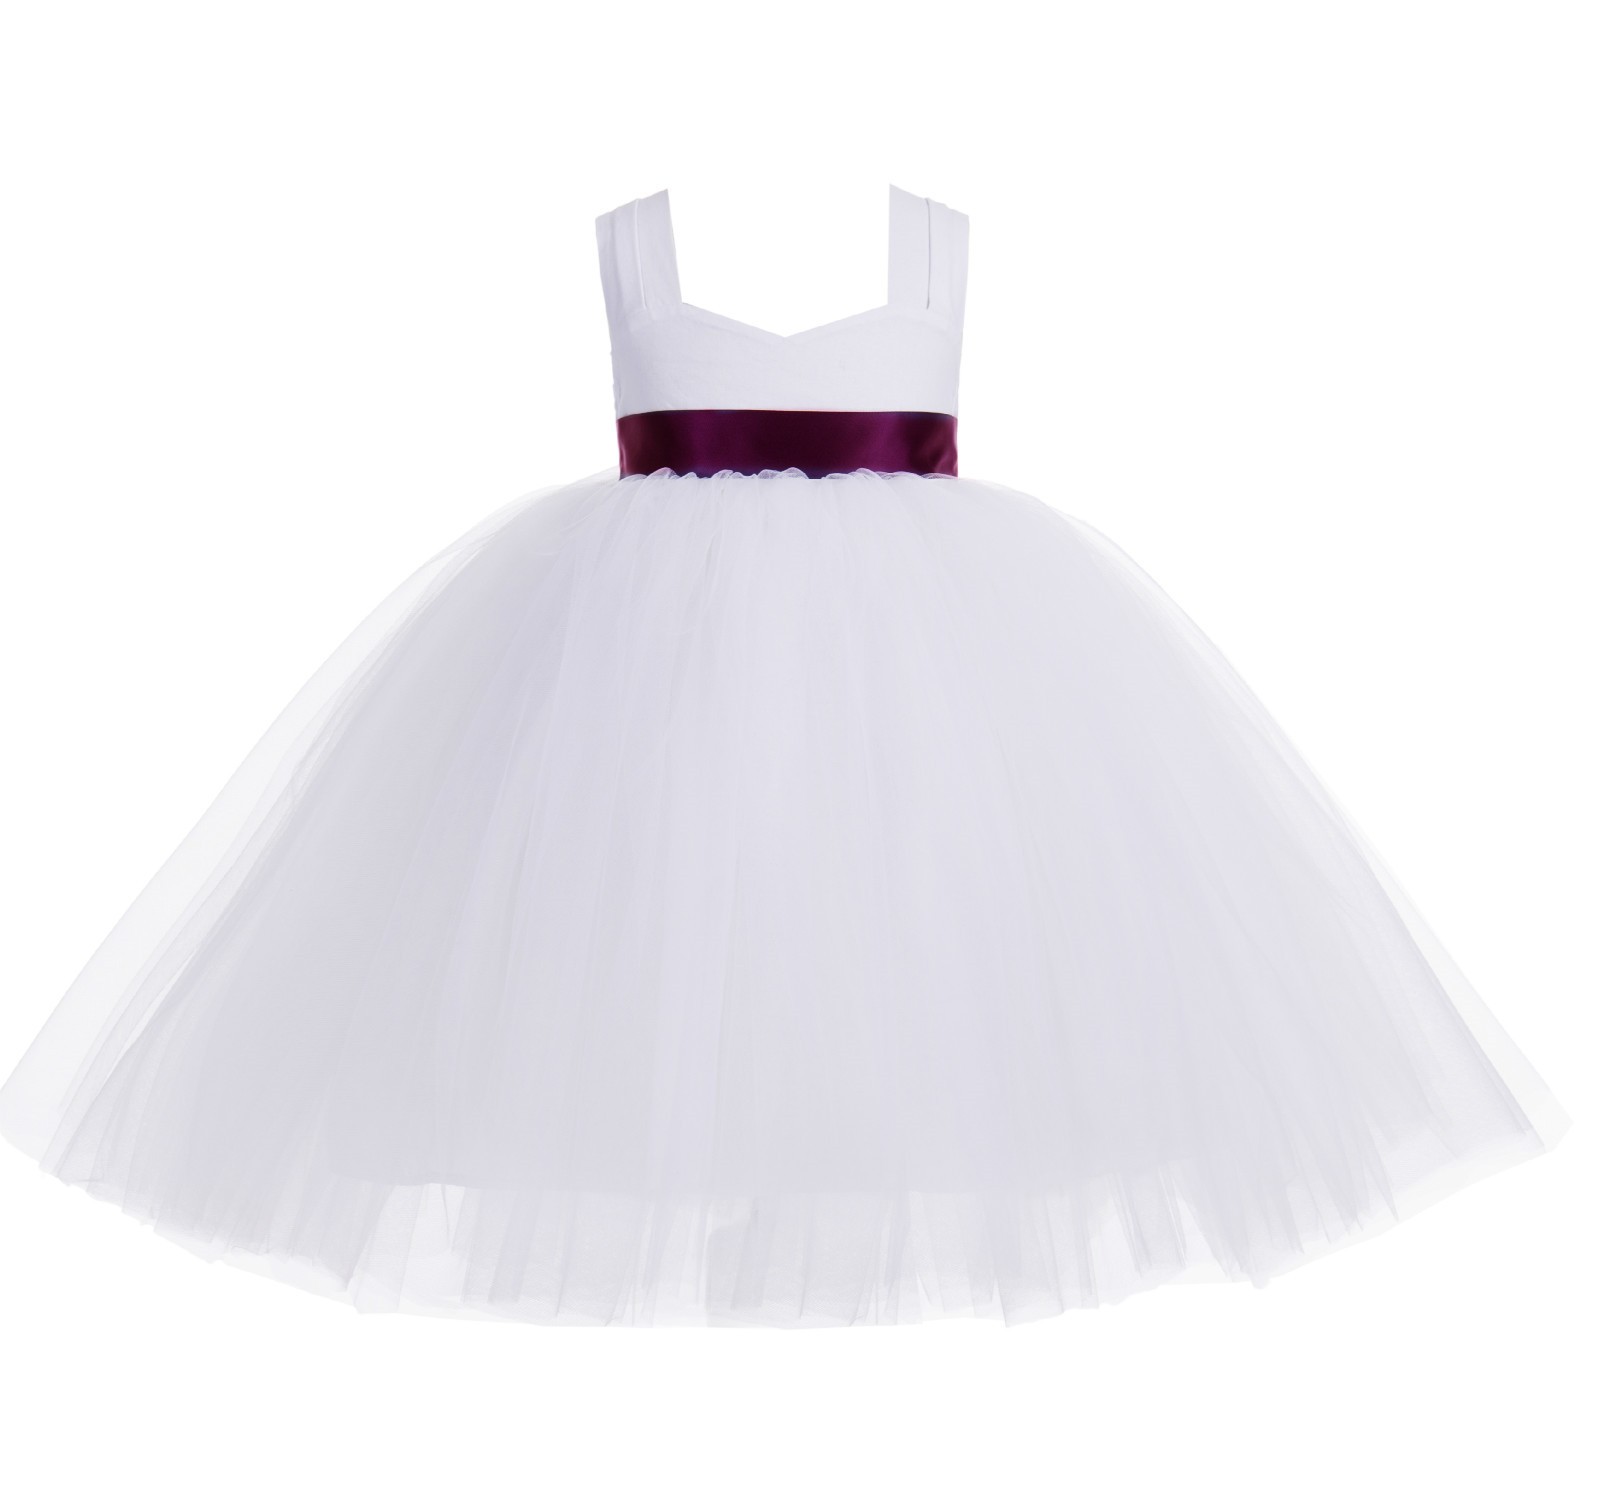 White / Burgundy Sweetheart Neck Cotton Top Tutu Flower Girl Dress 171R